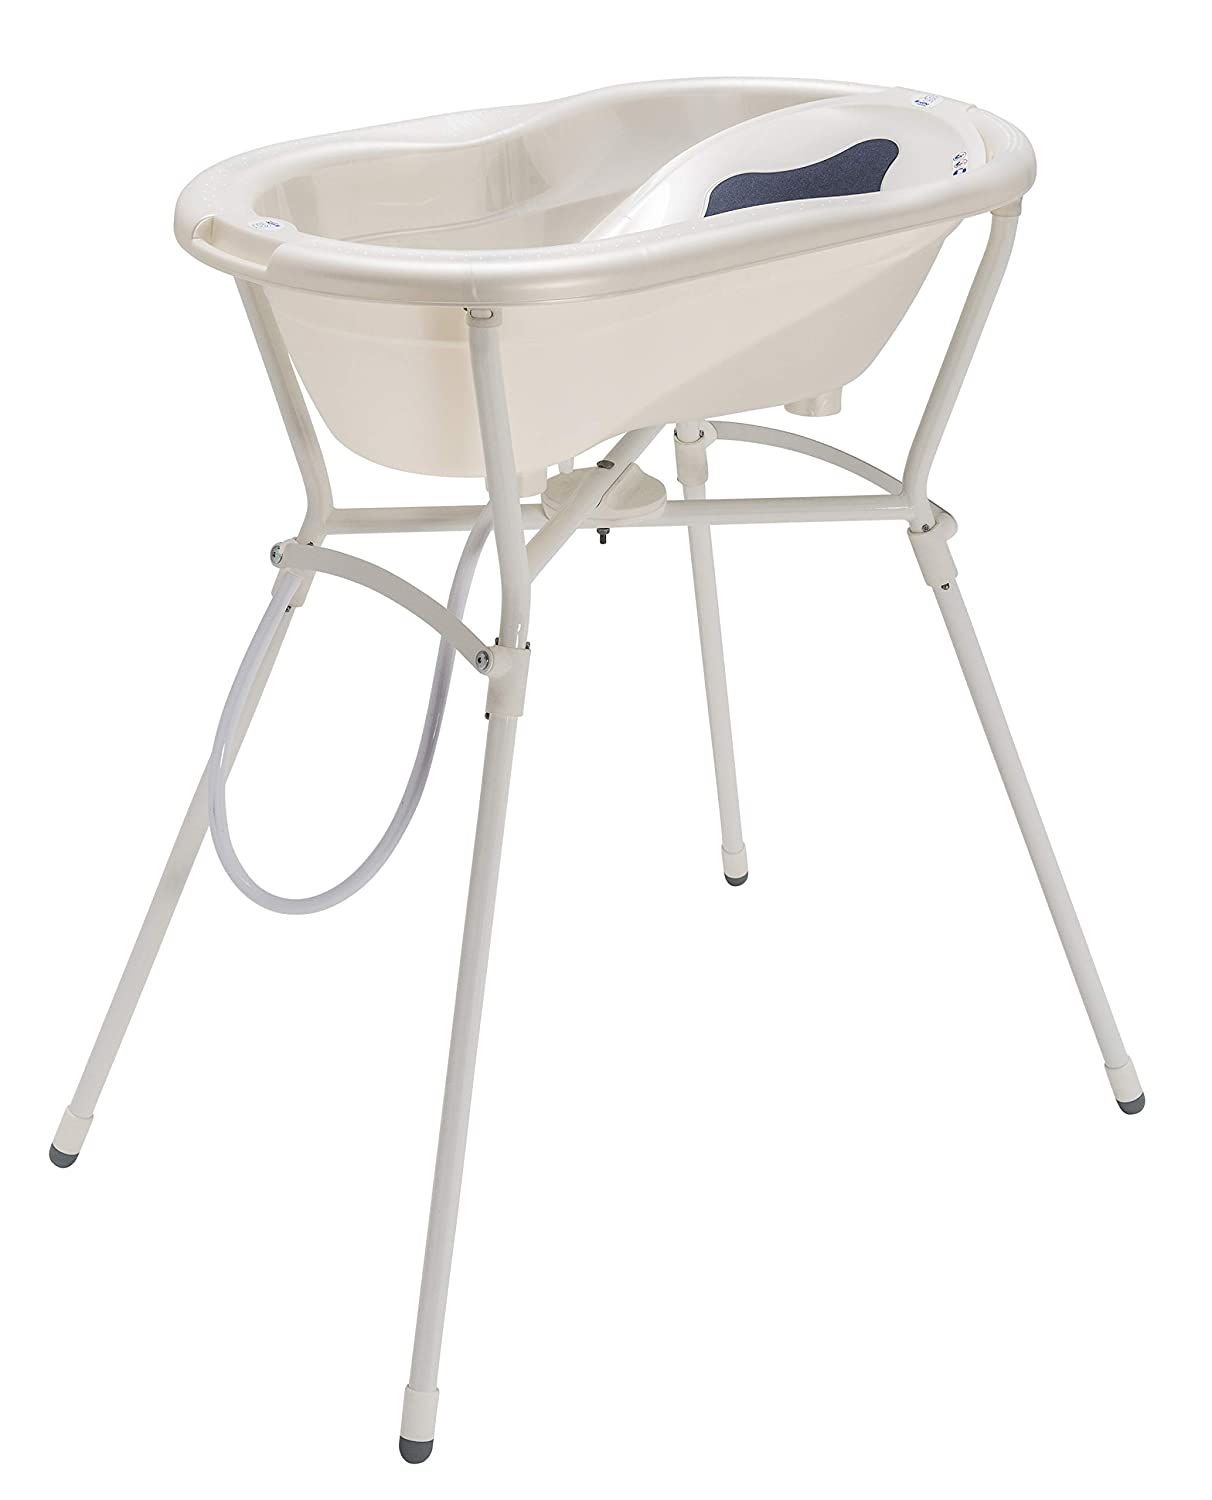 Rotho Babydesign Komplett-Badeset mit Wanne und Klapp-Ständer, 0-12 Monate, Max 25kg